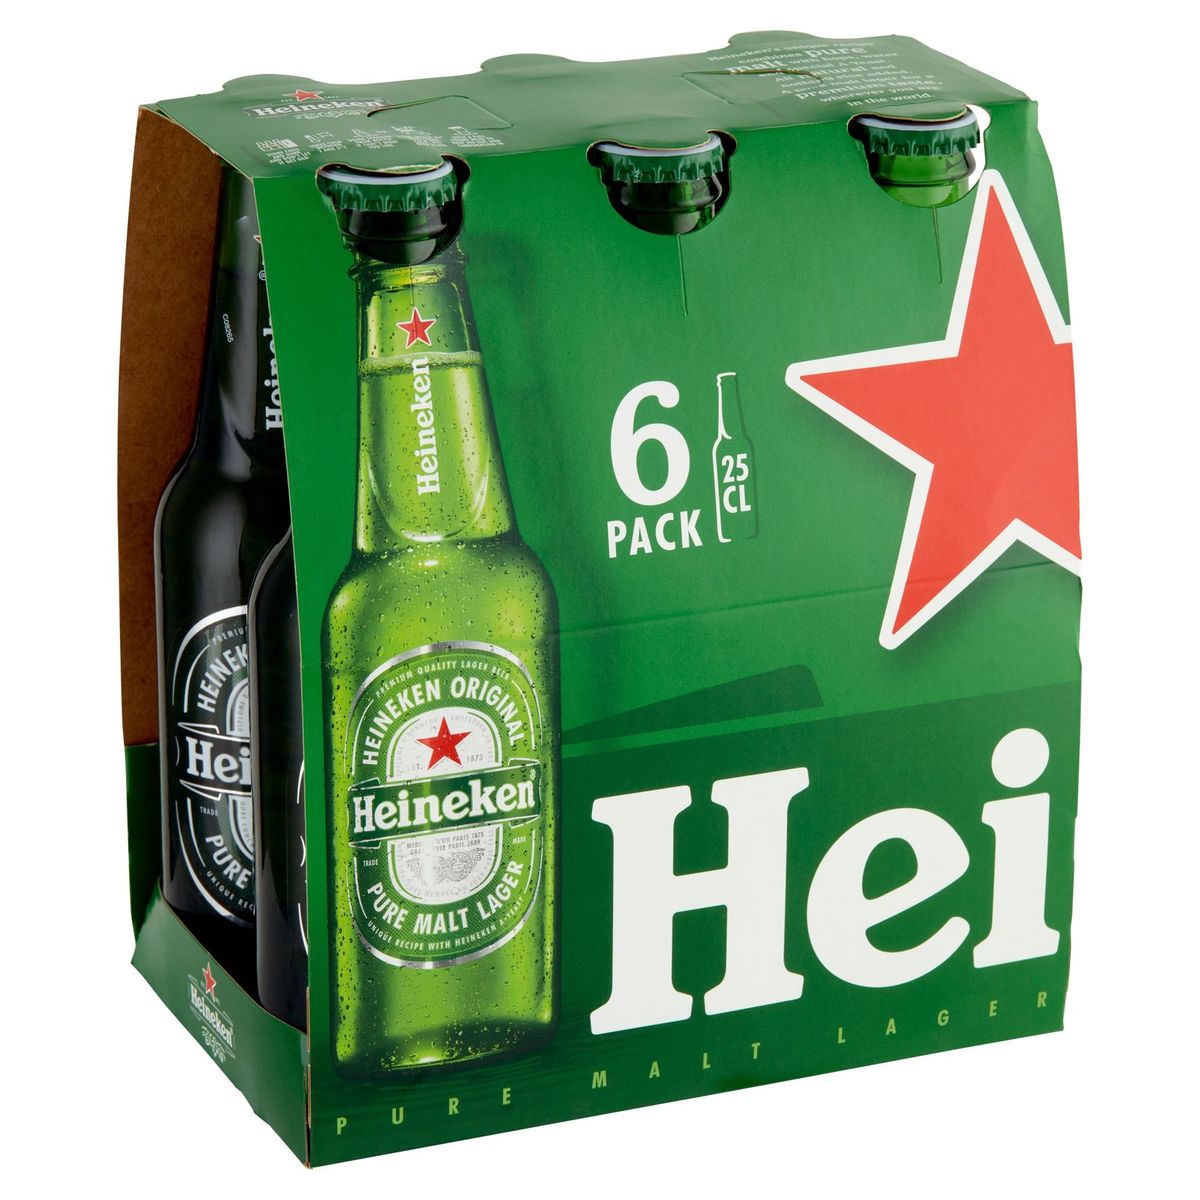 Heineken Bière blonde Pils 5% ALC 6 x 25 cl Bouteille